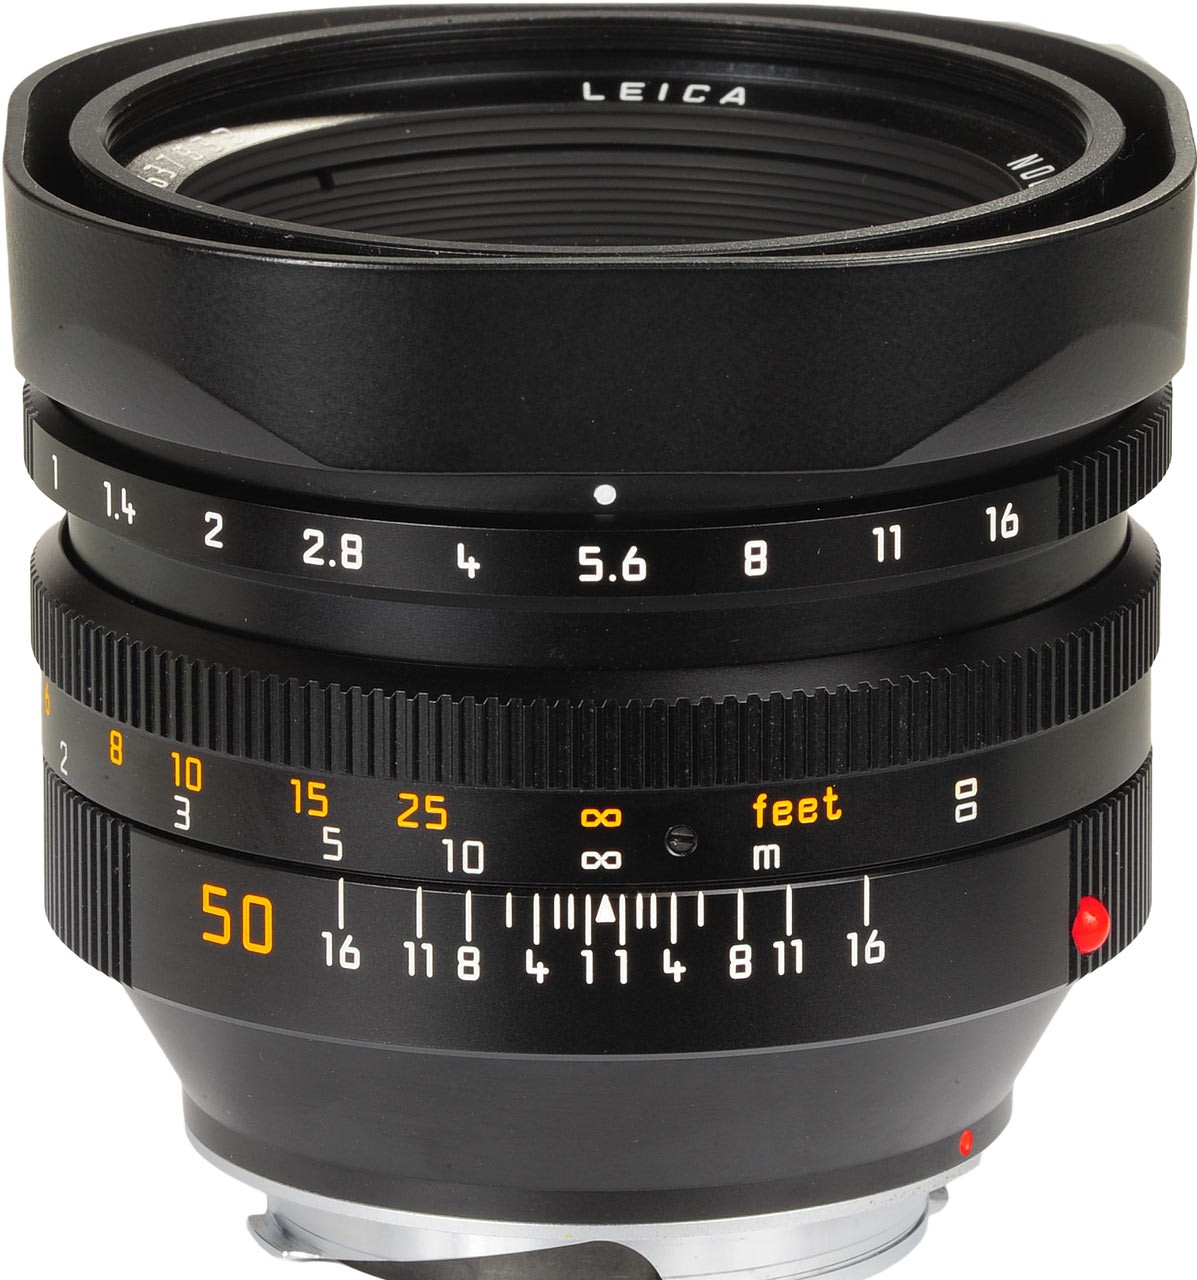 Leica Noctlux, lente 50mm da f/0.95, dal prezzo superiore a 10 mila euro